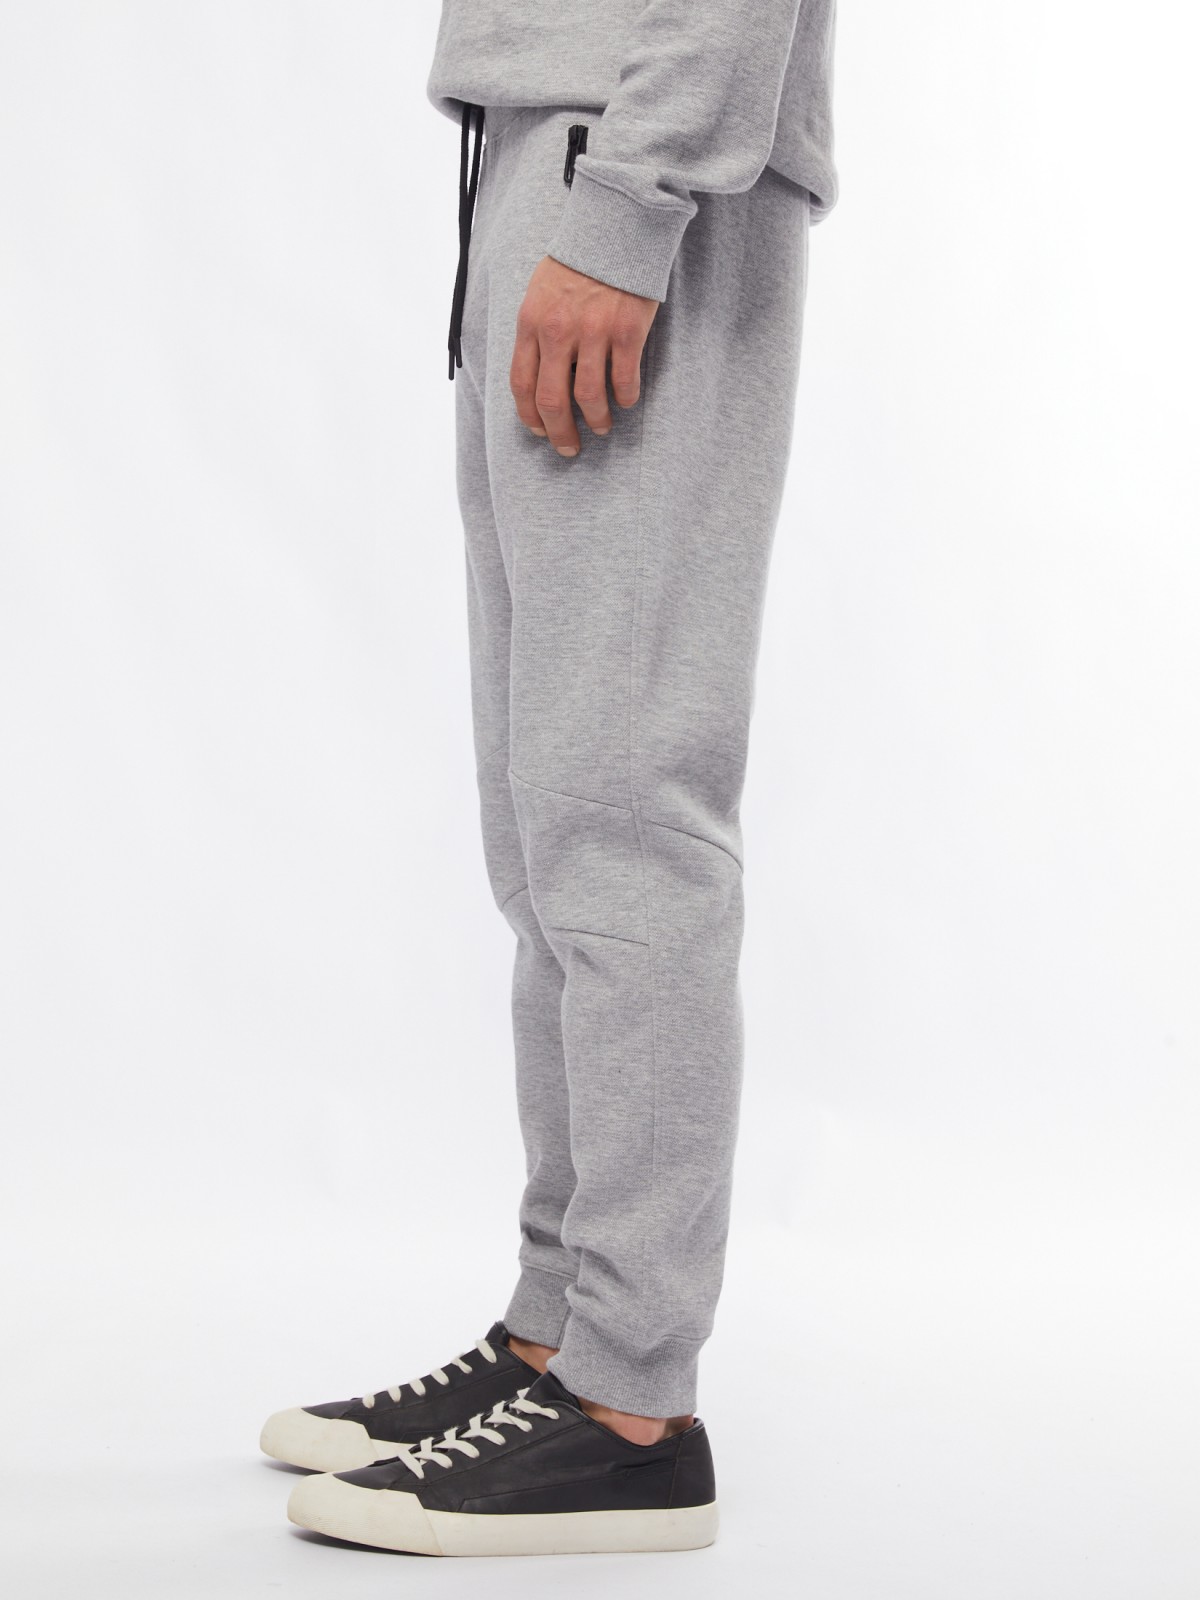 Трикотажные брюки-джоггеры в спортивном стиле zolla 014217679033, цвет серый, размер M - фото 3